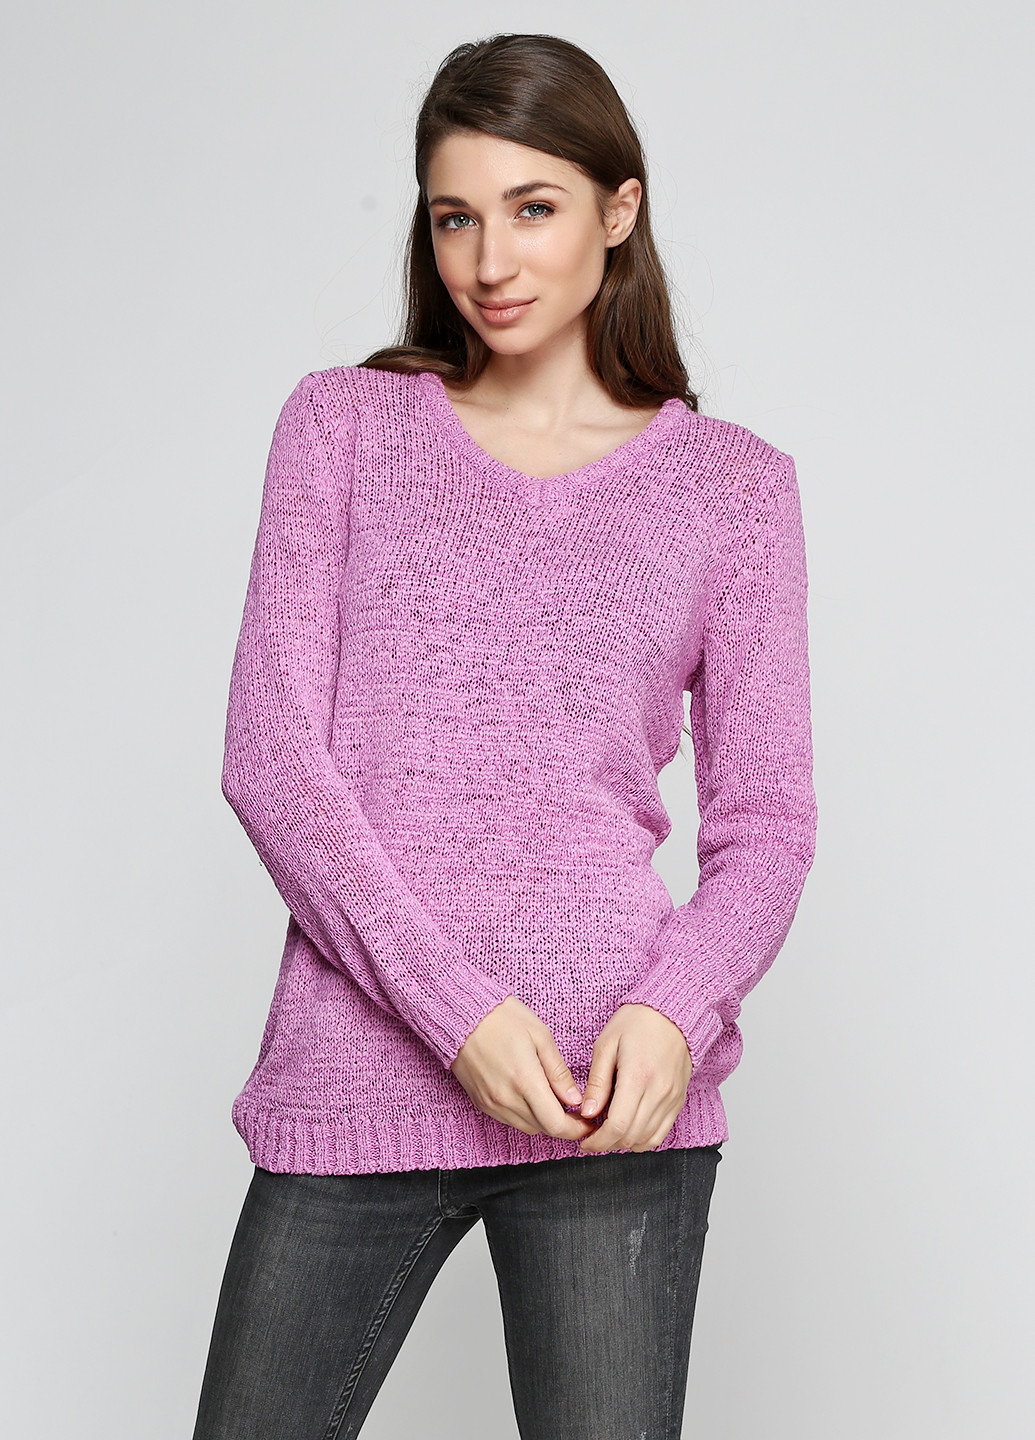 Сиреневый демисезонный пуловер пуловер Long Island